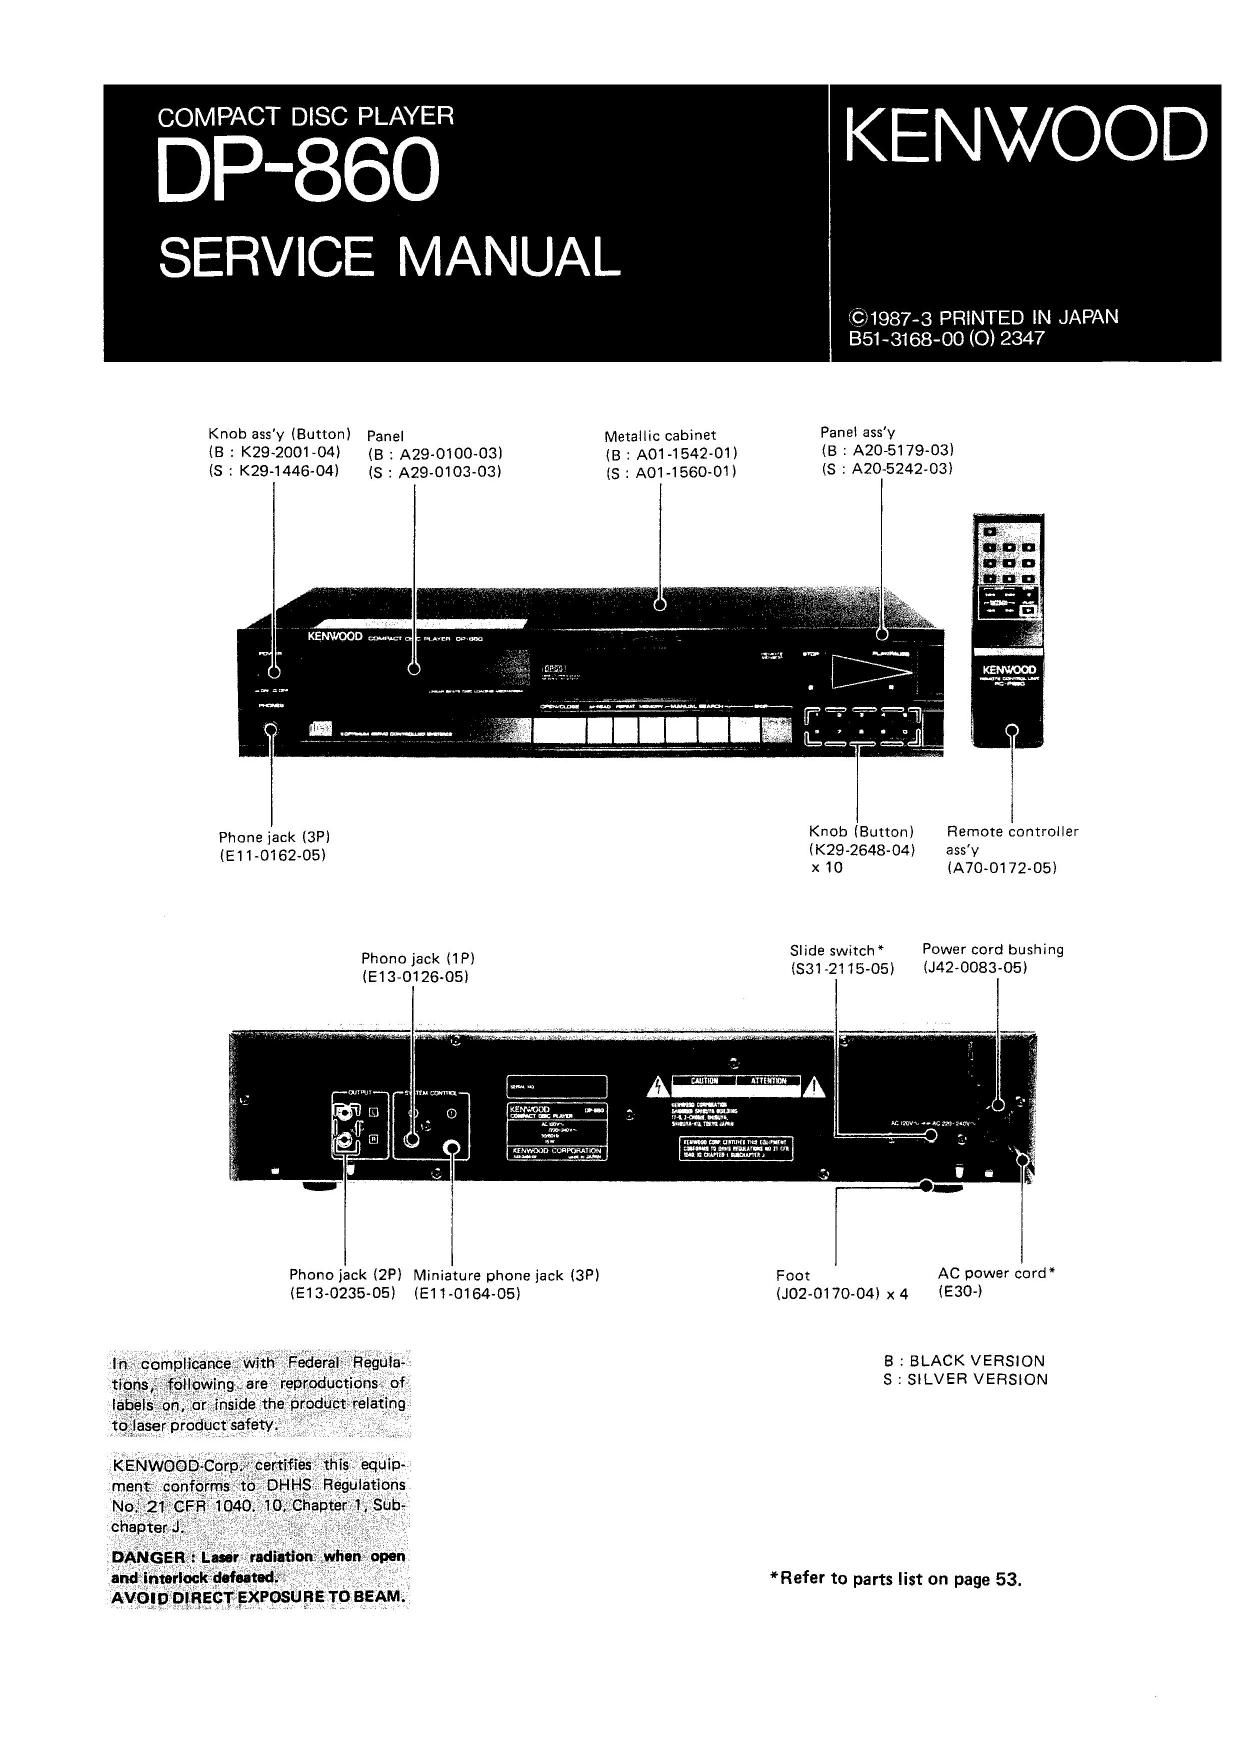 Kenwood DP 860 Service Manual